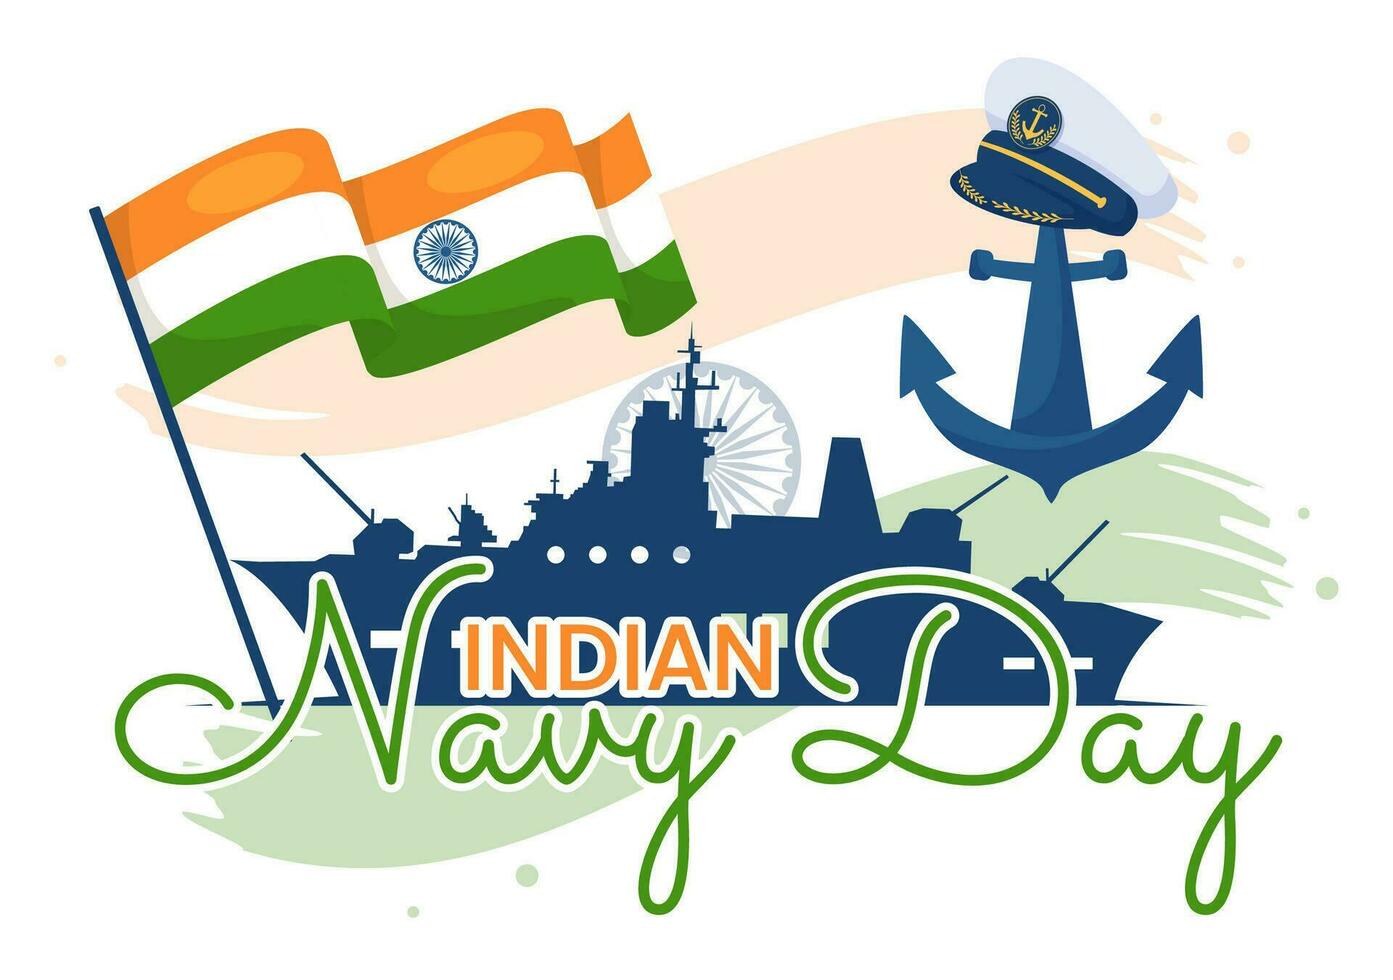 indisk Marin dag vektor illustration på december 4 med kämpe fartyg för människor militär armén hälsning uppskattar soldater i bakgrund design